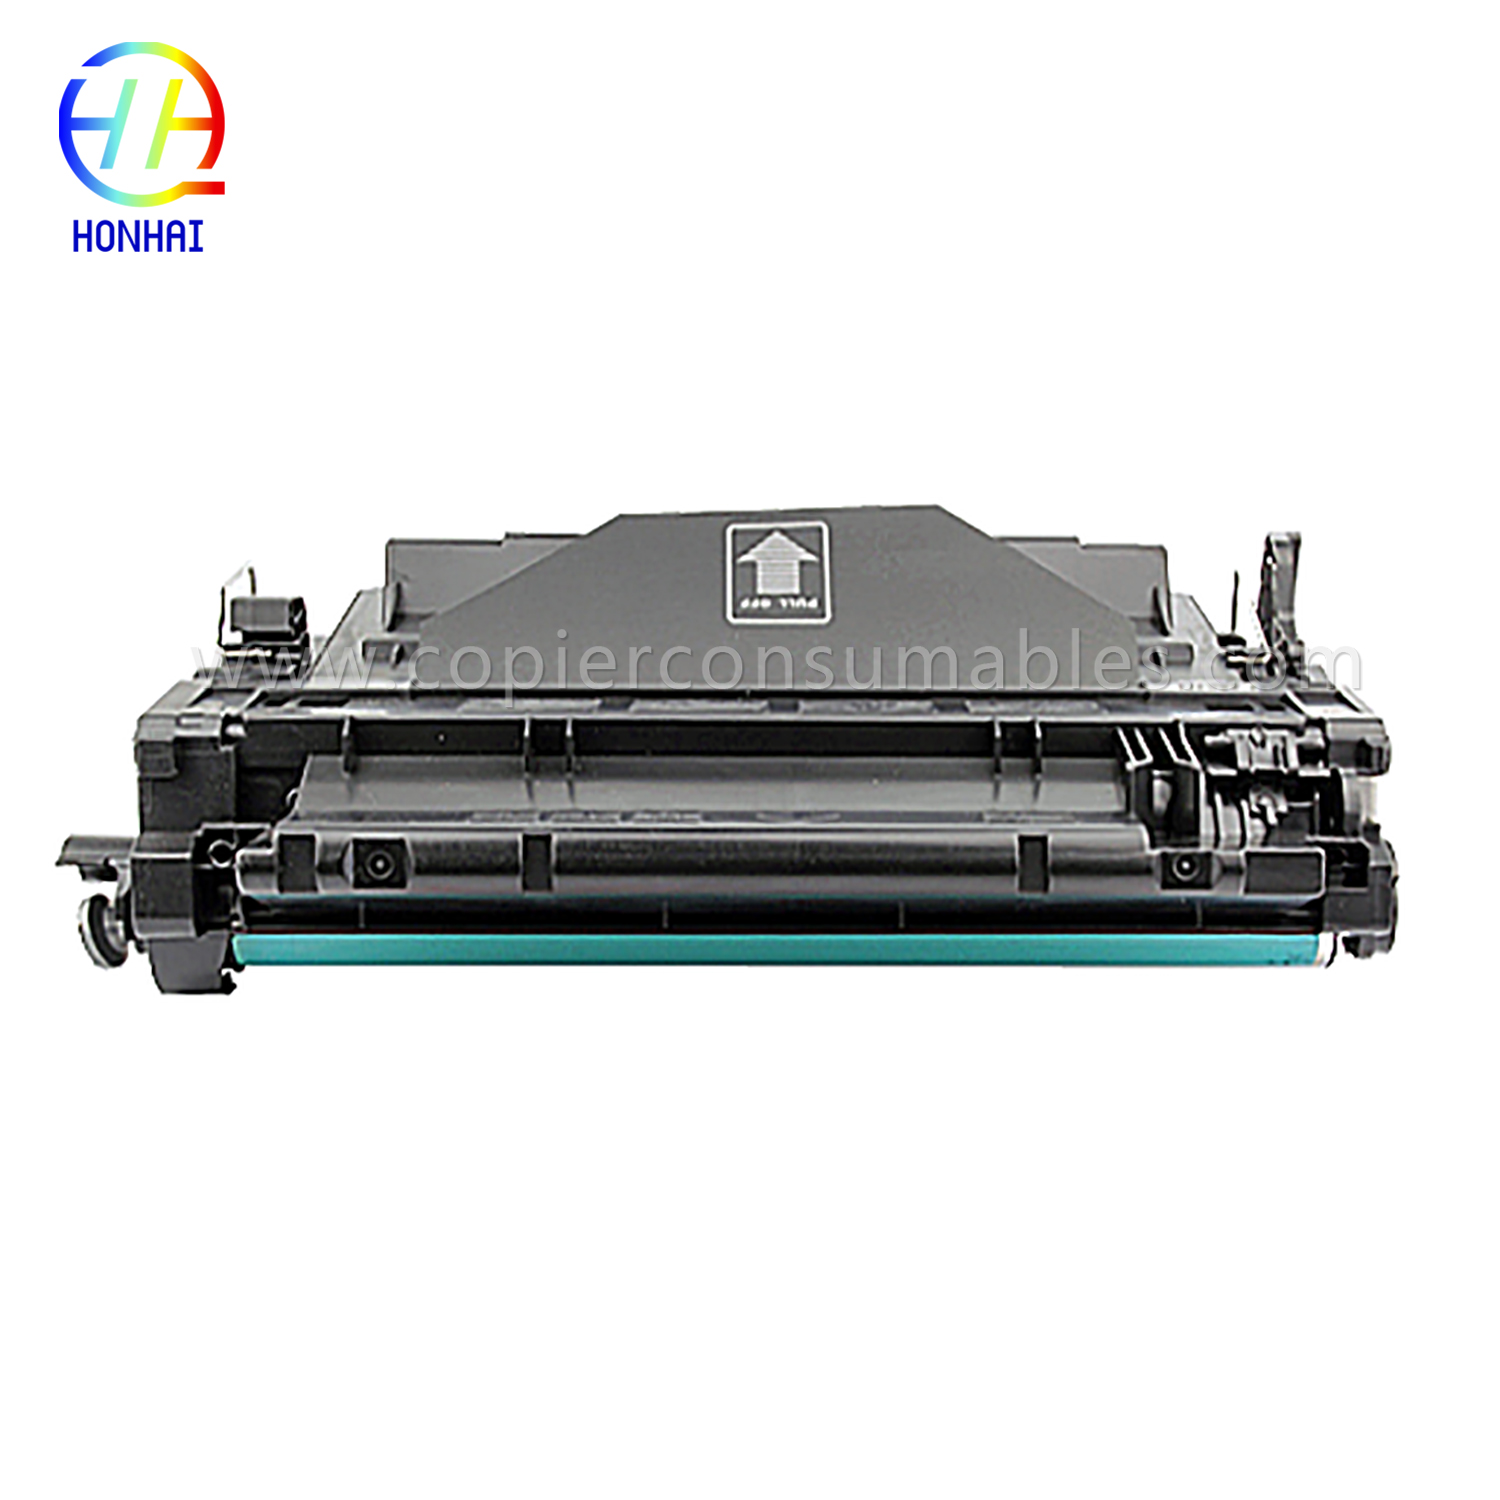 خراطيش حبر ملونة لطابعات HP LaserJet Pro MFP M521dn Enterprise P3015 CE255X